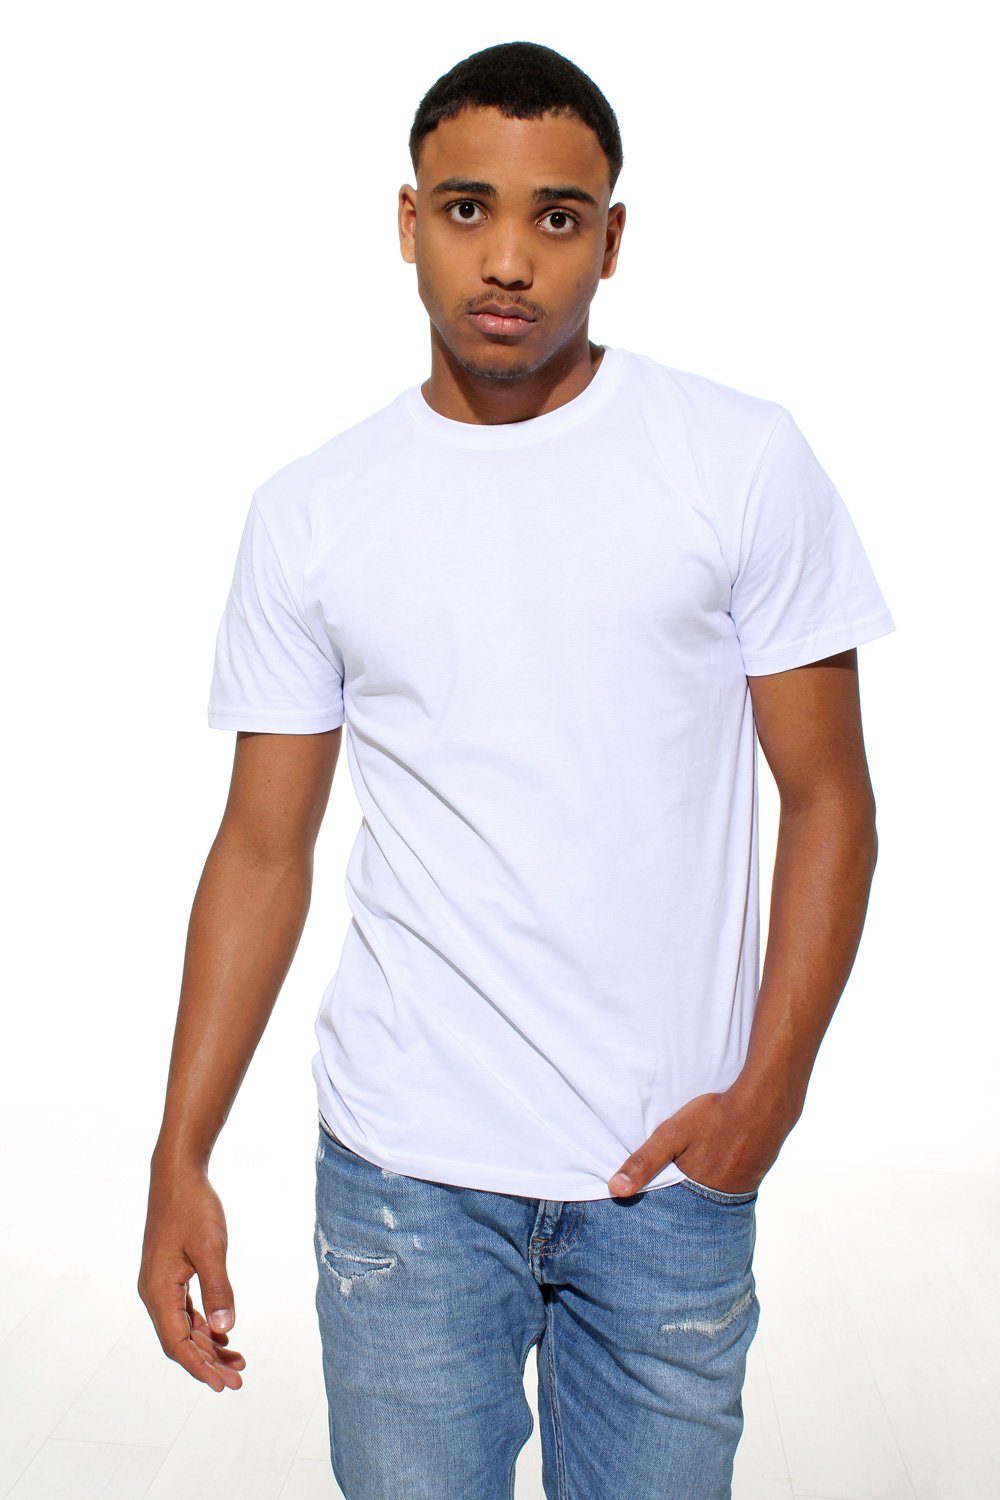 Stark Soul® T-Shirt T-Shirt, Pack Weiß 2er Baumwolle